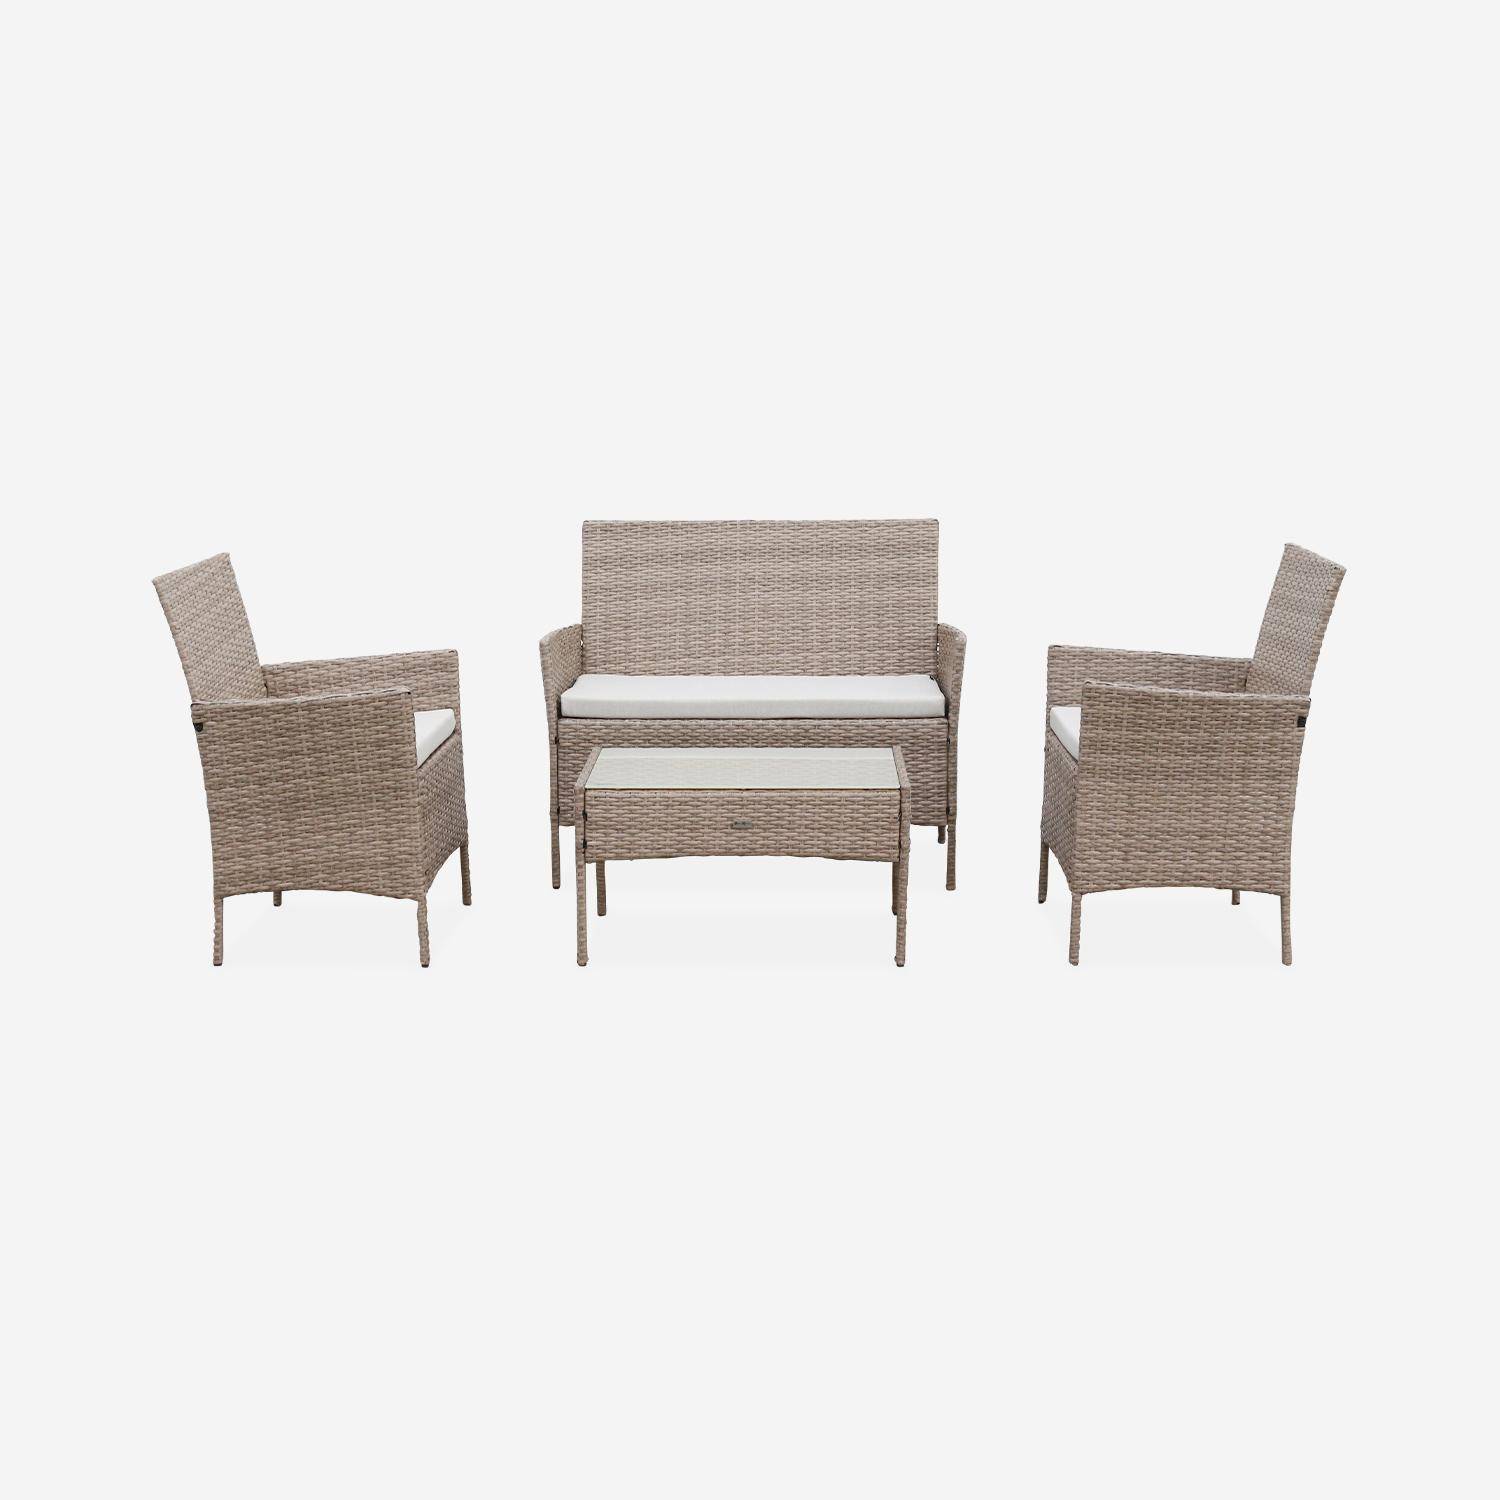 Conjunto de muebles de jardín de resina trenzada - Moltès - Natural, cojines beige - 4 plazas - 1 sofá, 2 sillones, una mesa de centro,sweeek,Photo4